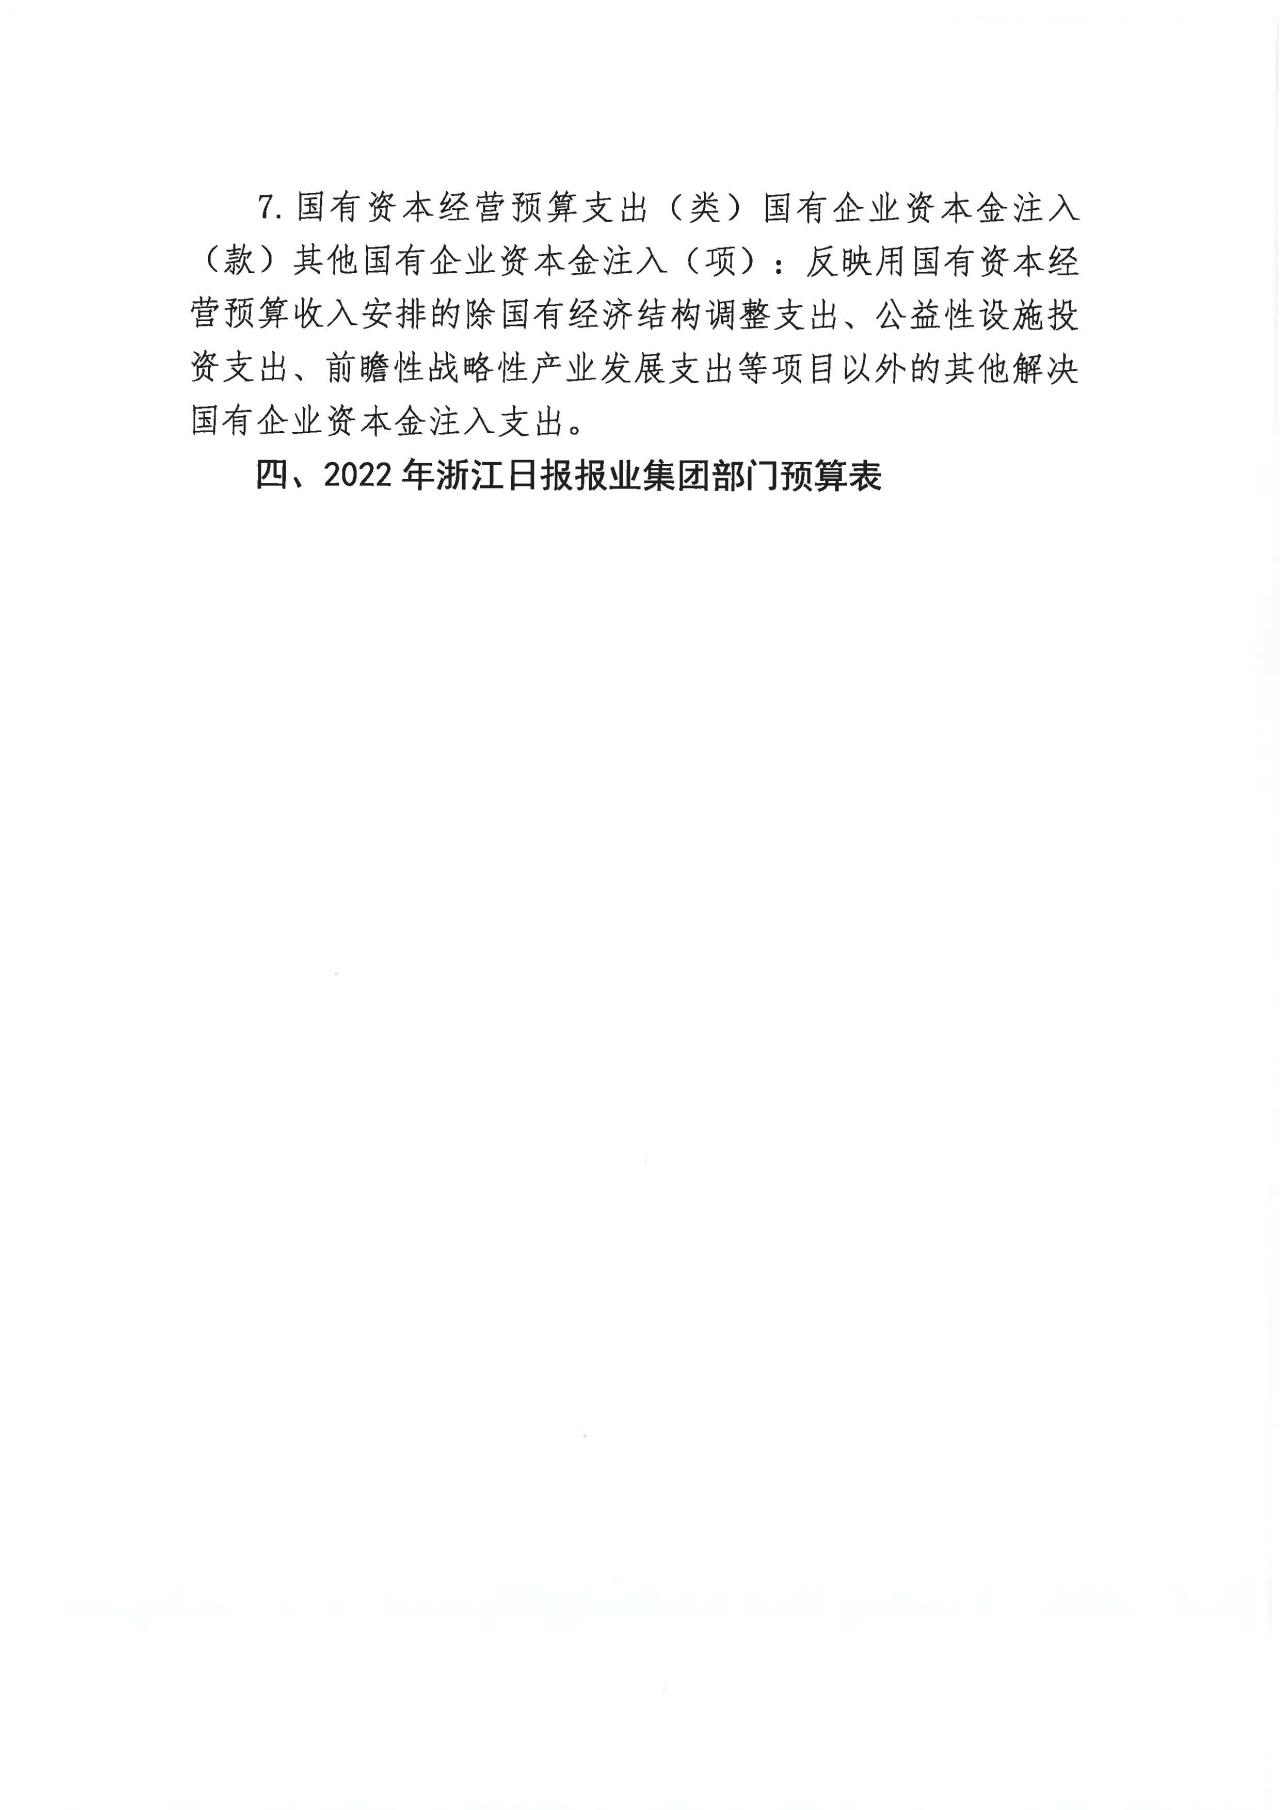 浙江日报报业集团2022年部门预算公开_页面_09.jpg